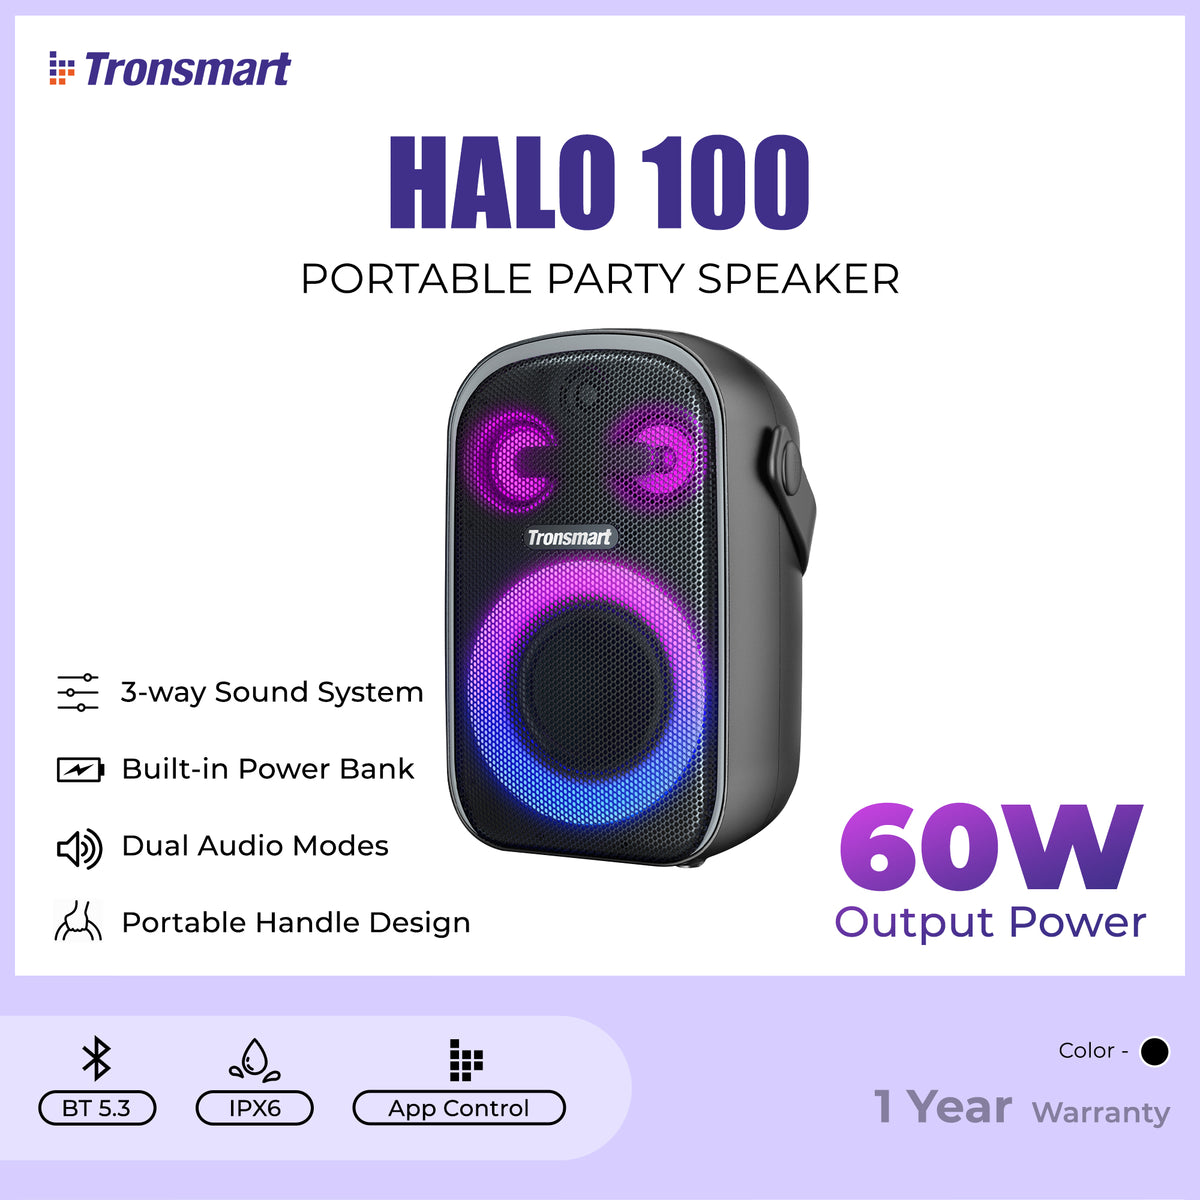 Tronsmart Halo 100 Portable Party Speaker (60W), Outdoor Speaker